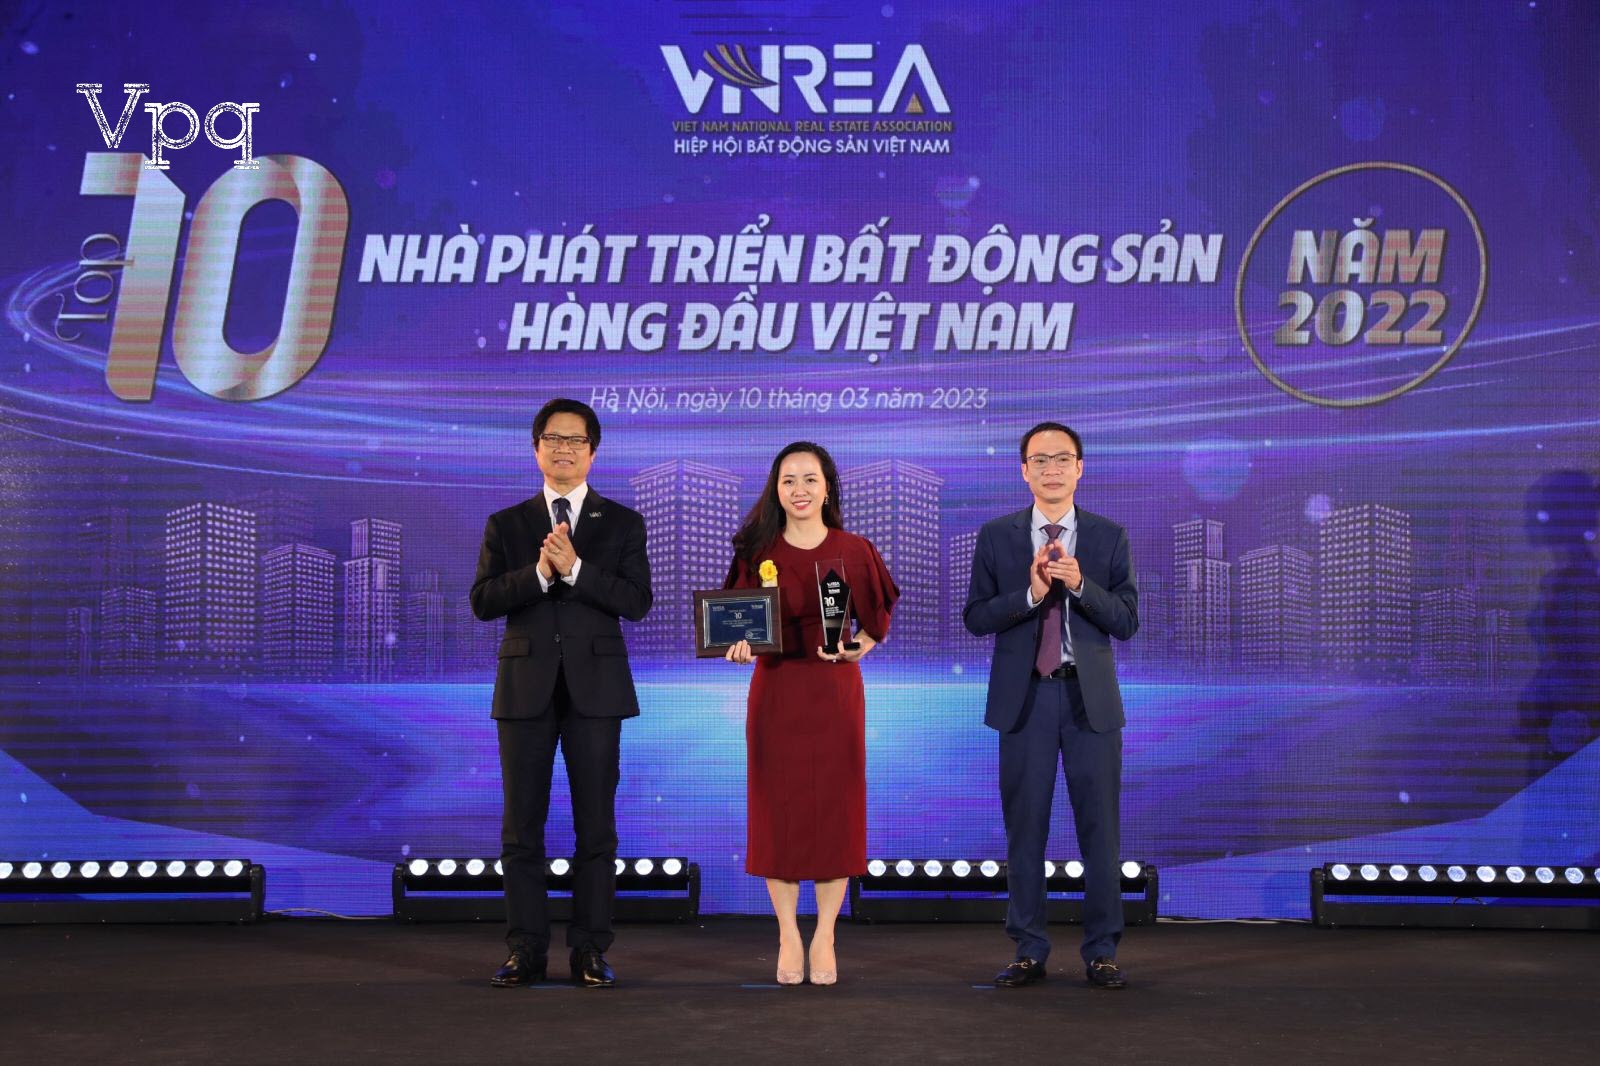 Bà Nguyễn Kiều Anh - Giám đốc Marketing Sun Property nhận giải thưởng Top 10 Nhà phát triển bất động sản hàng đầu Việt Nam năm 2022 cho Sun Property